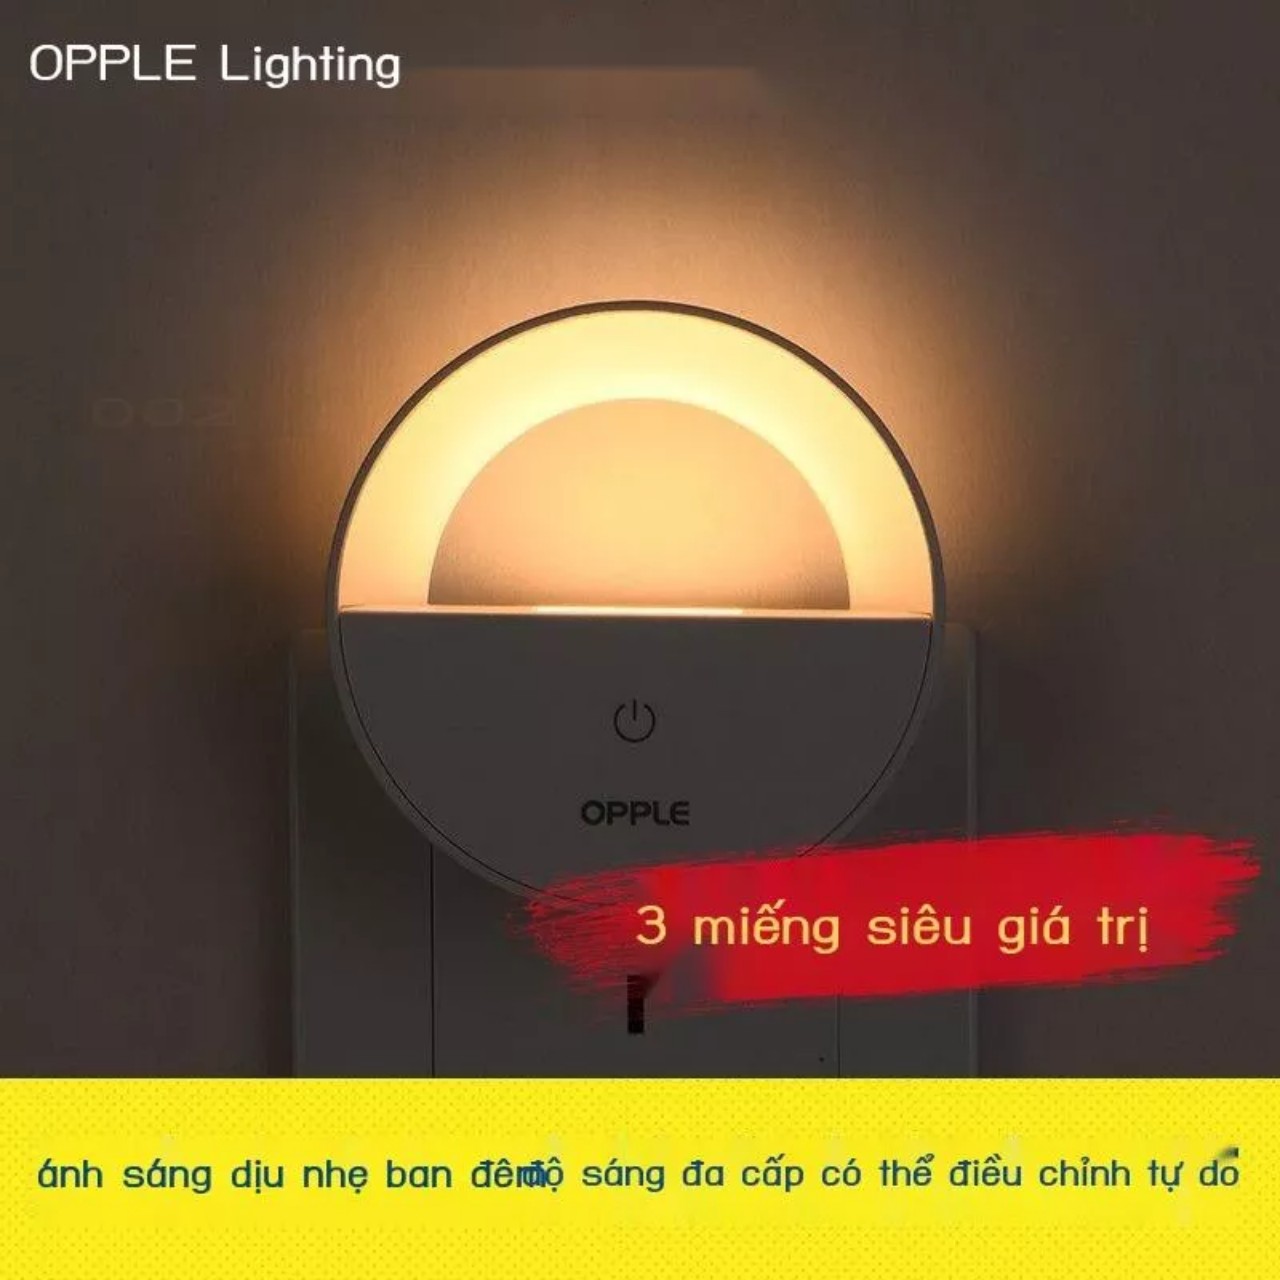 Đèn ngủ cảm ứng OPPLE điều chỉnh chế độ sáng giúp bạn ngủ thoải mái hơn